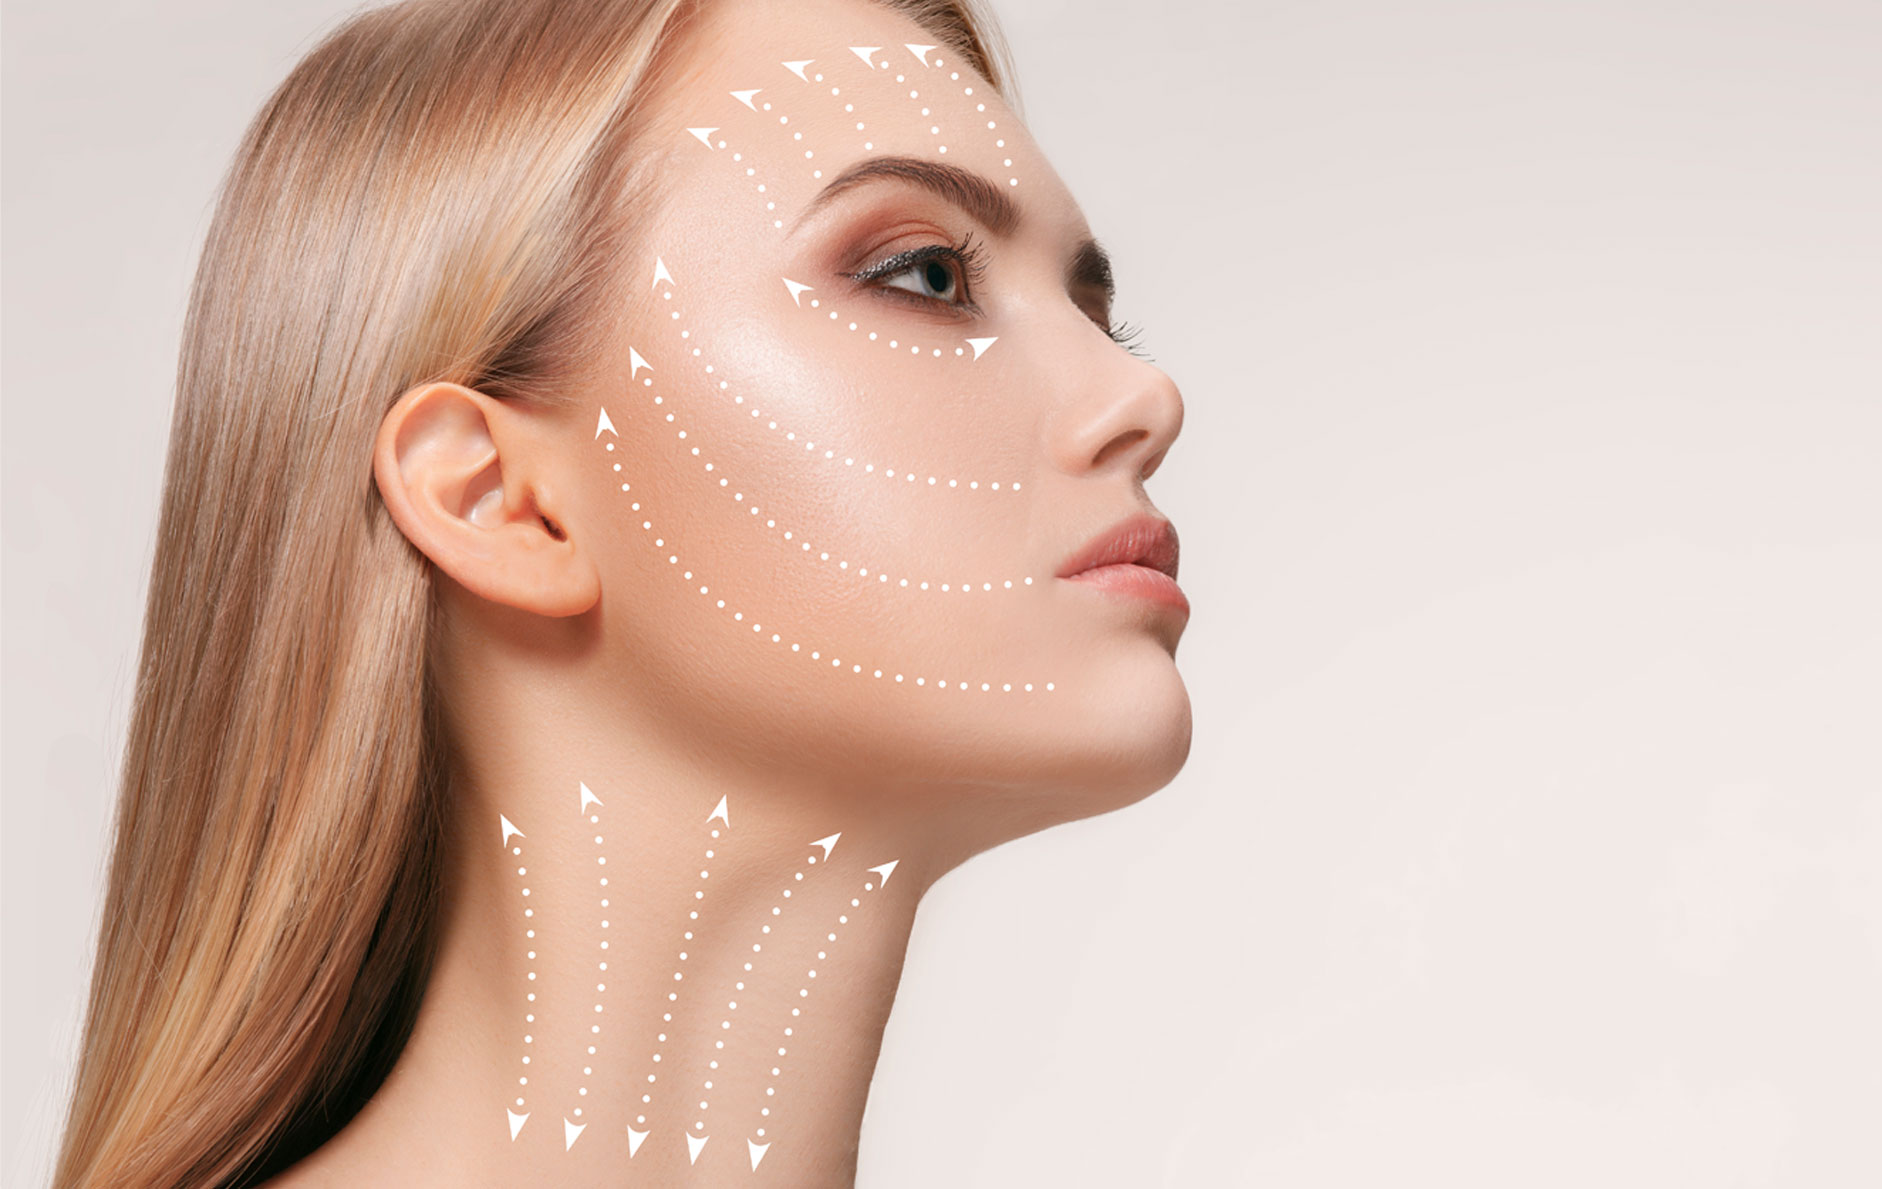 Cirugía Plástica Facial - Conoce Nuestras Intervenciones Quirúrgicas